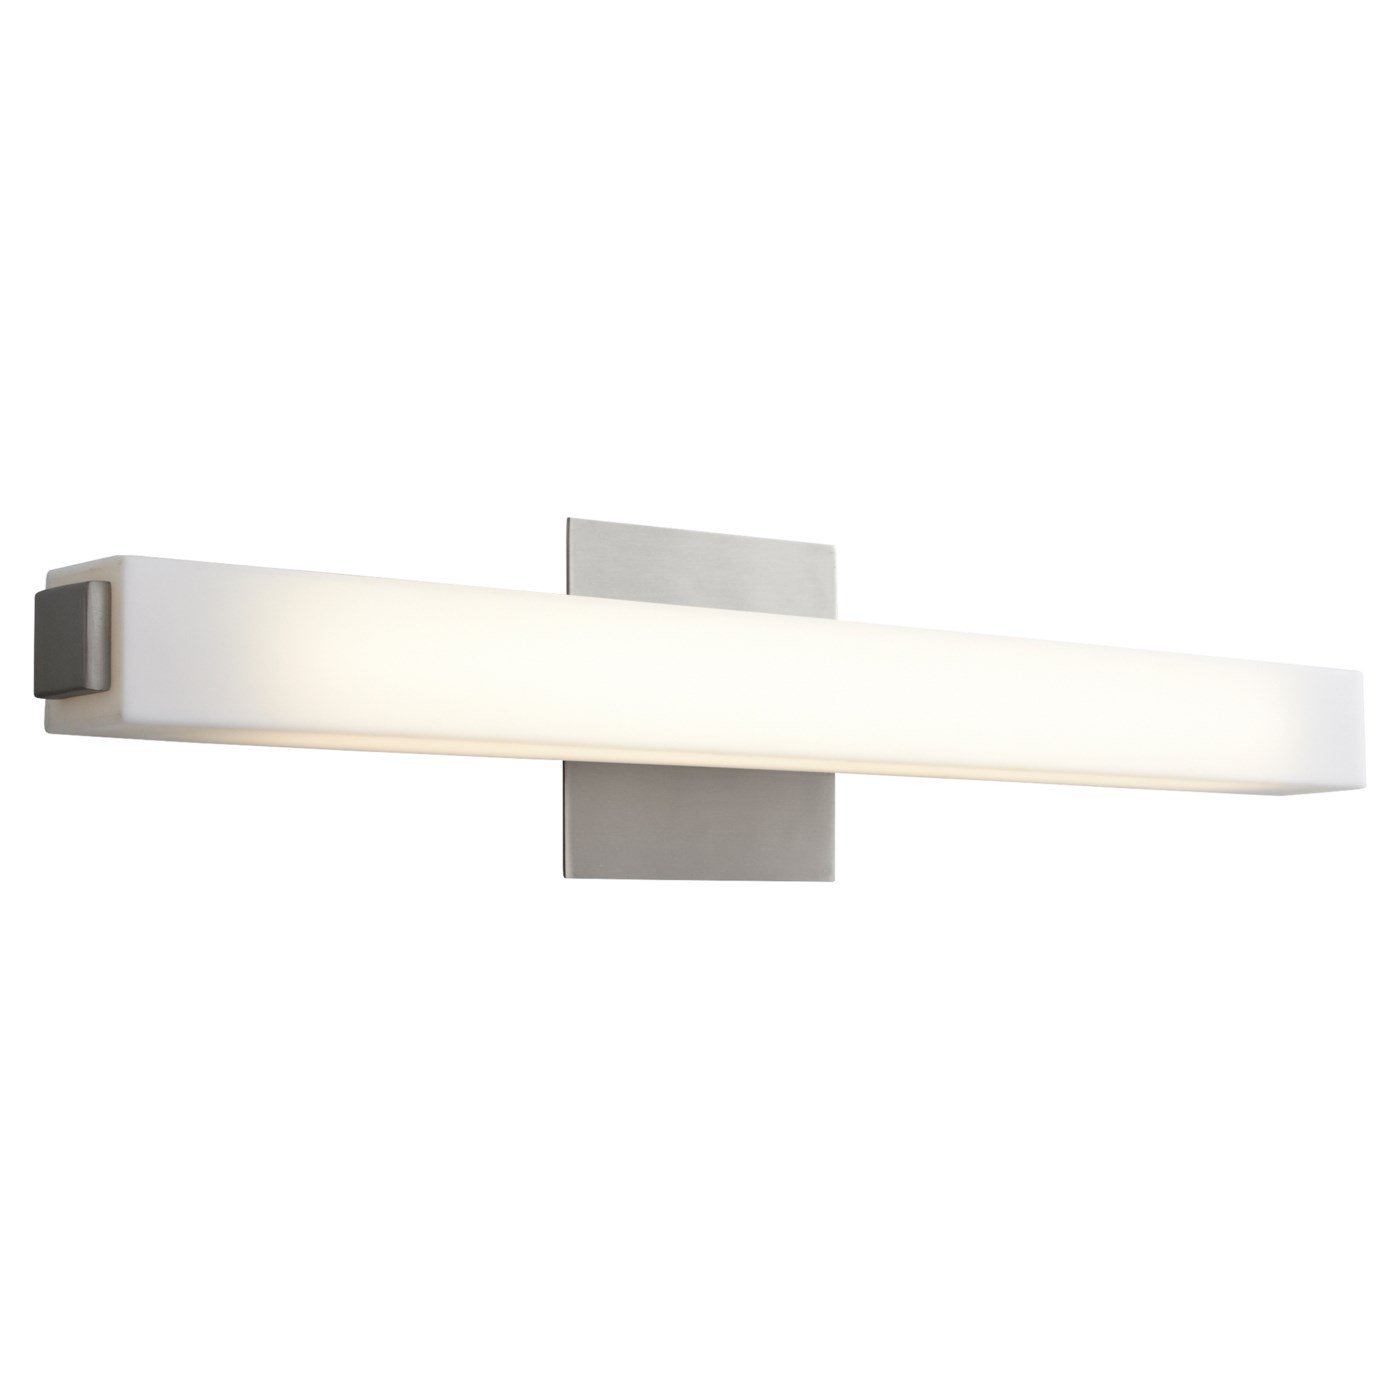 Oxygen Lighting 2-5170-224 Adelphi 2' 14W Bathroom Lighting Fixture Vanity - Satin Nickel